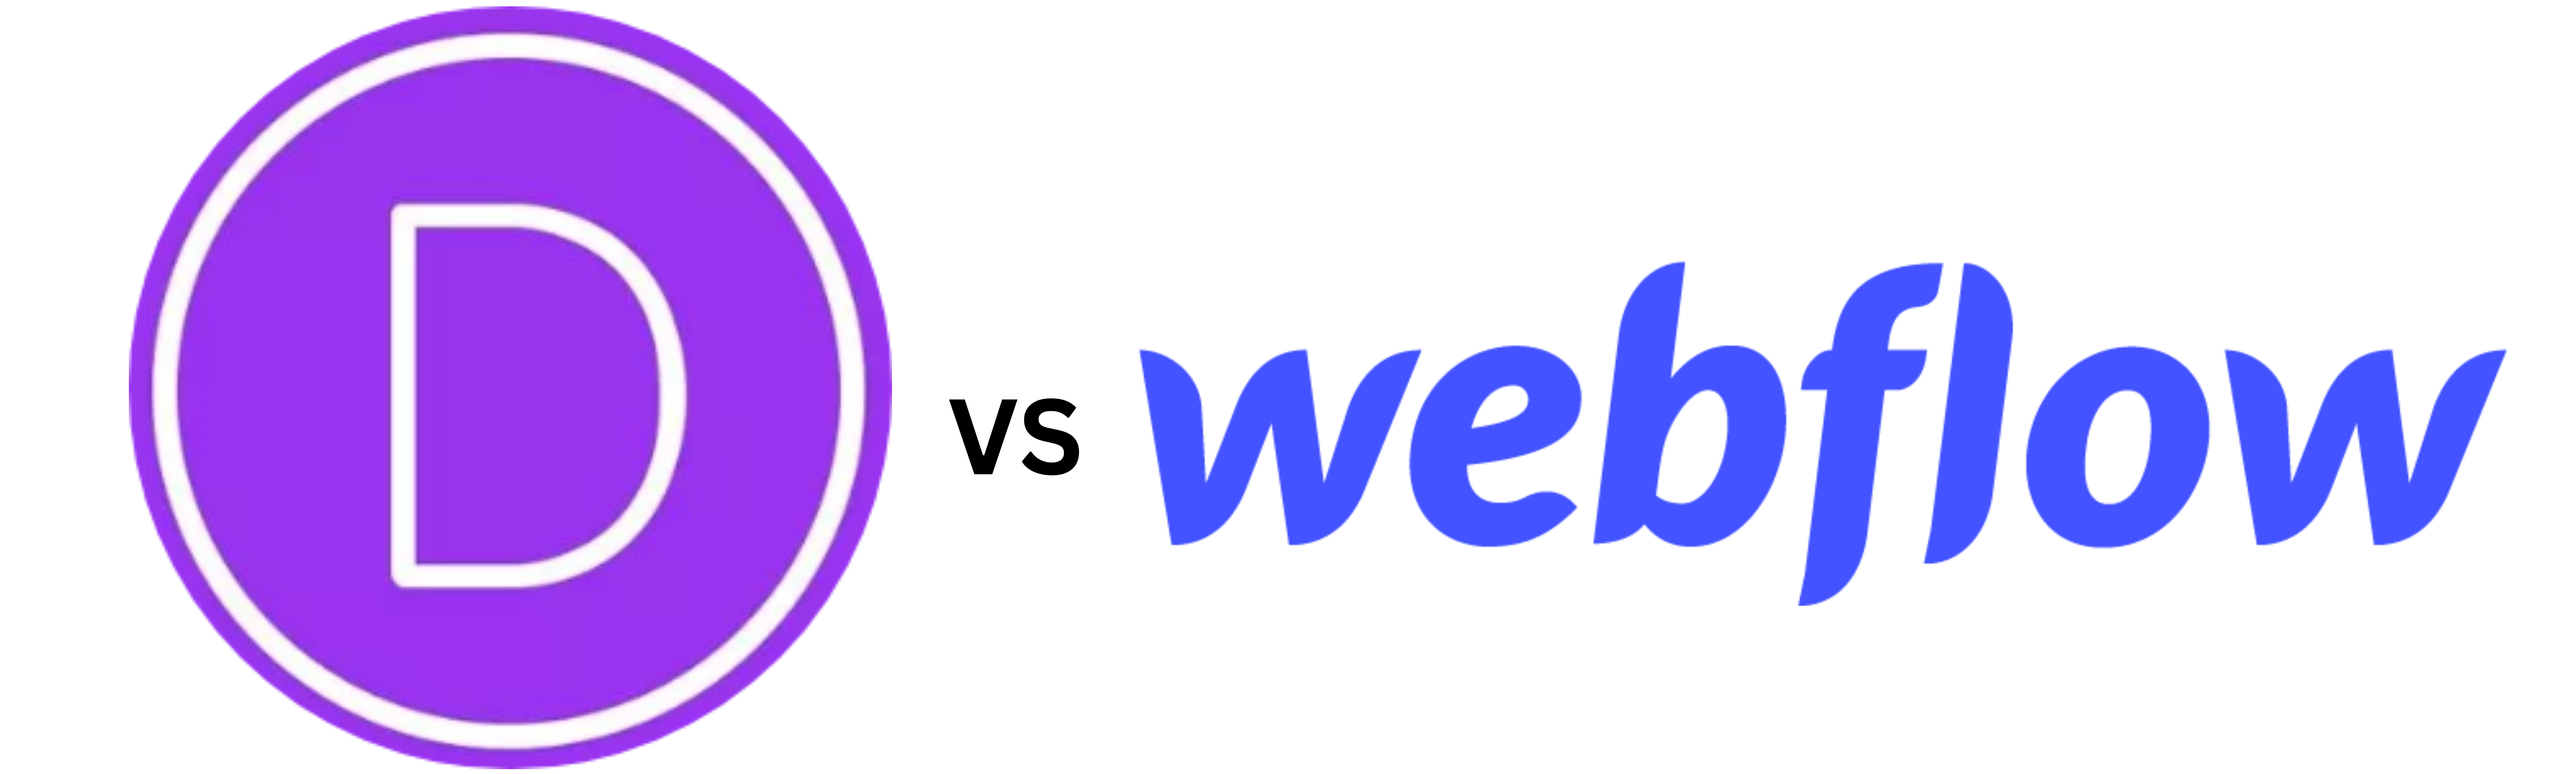 Divi vs. Webflow